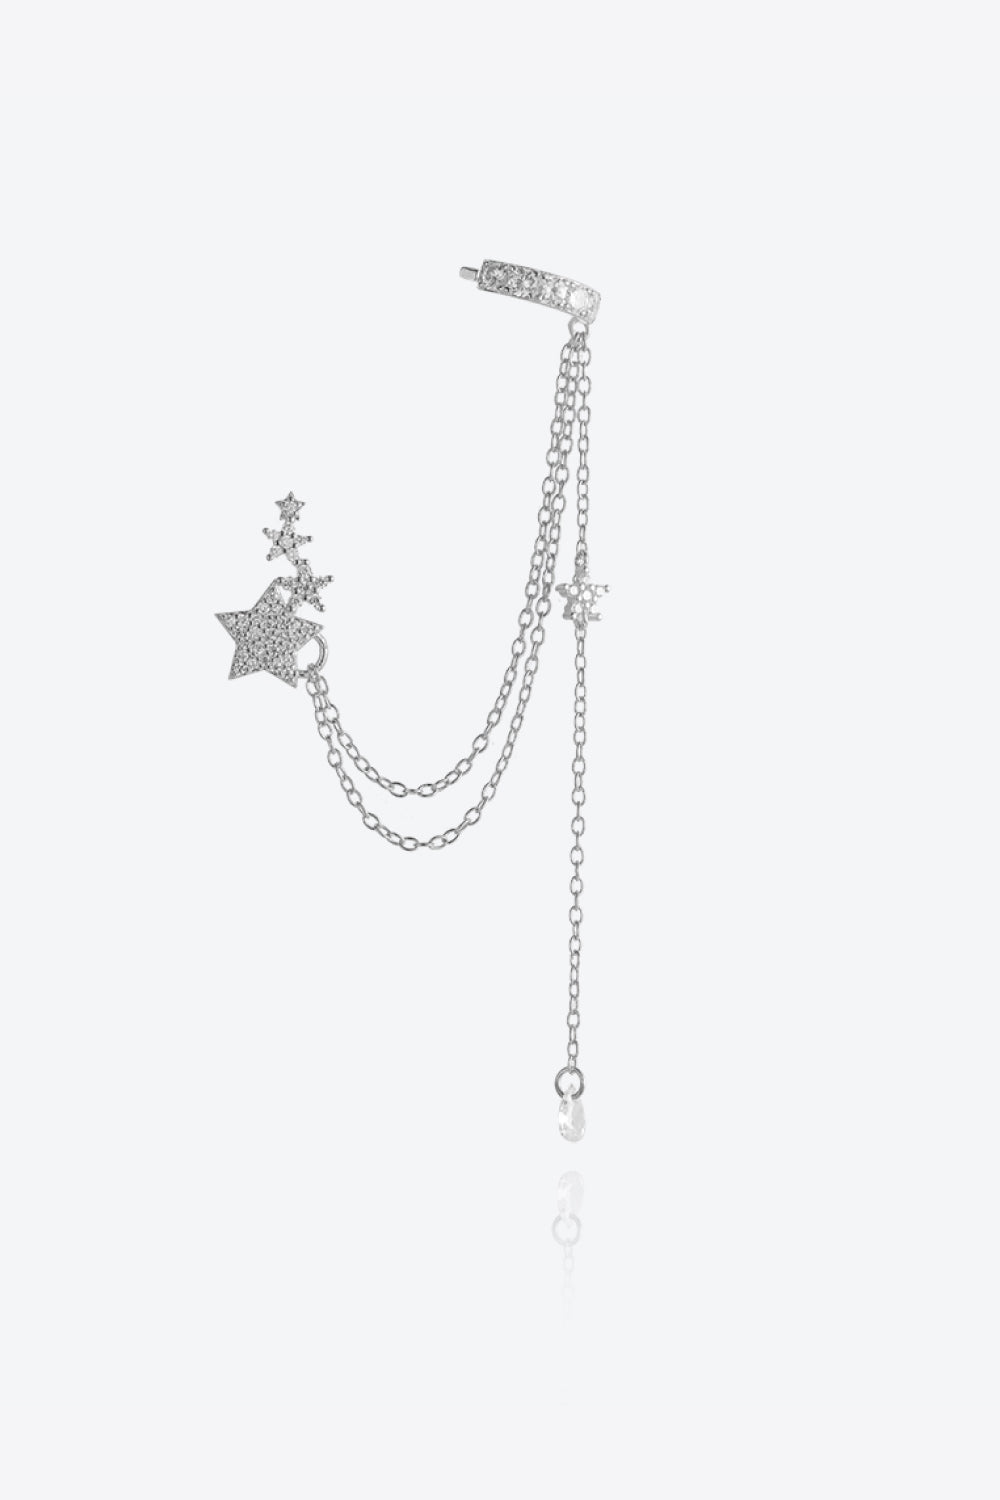 Delicate chain single Zircon Star earring 925 Sterling Silver